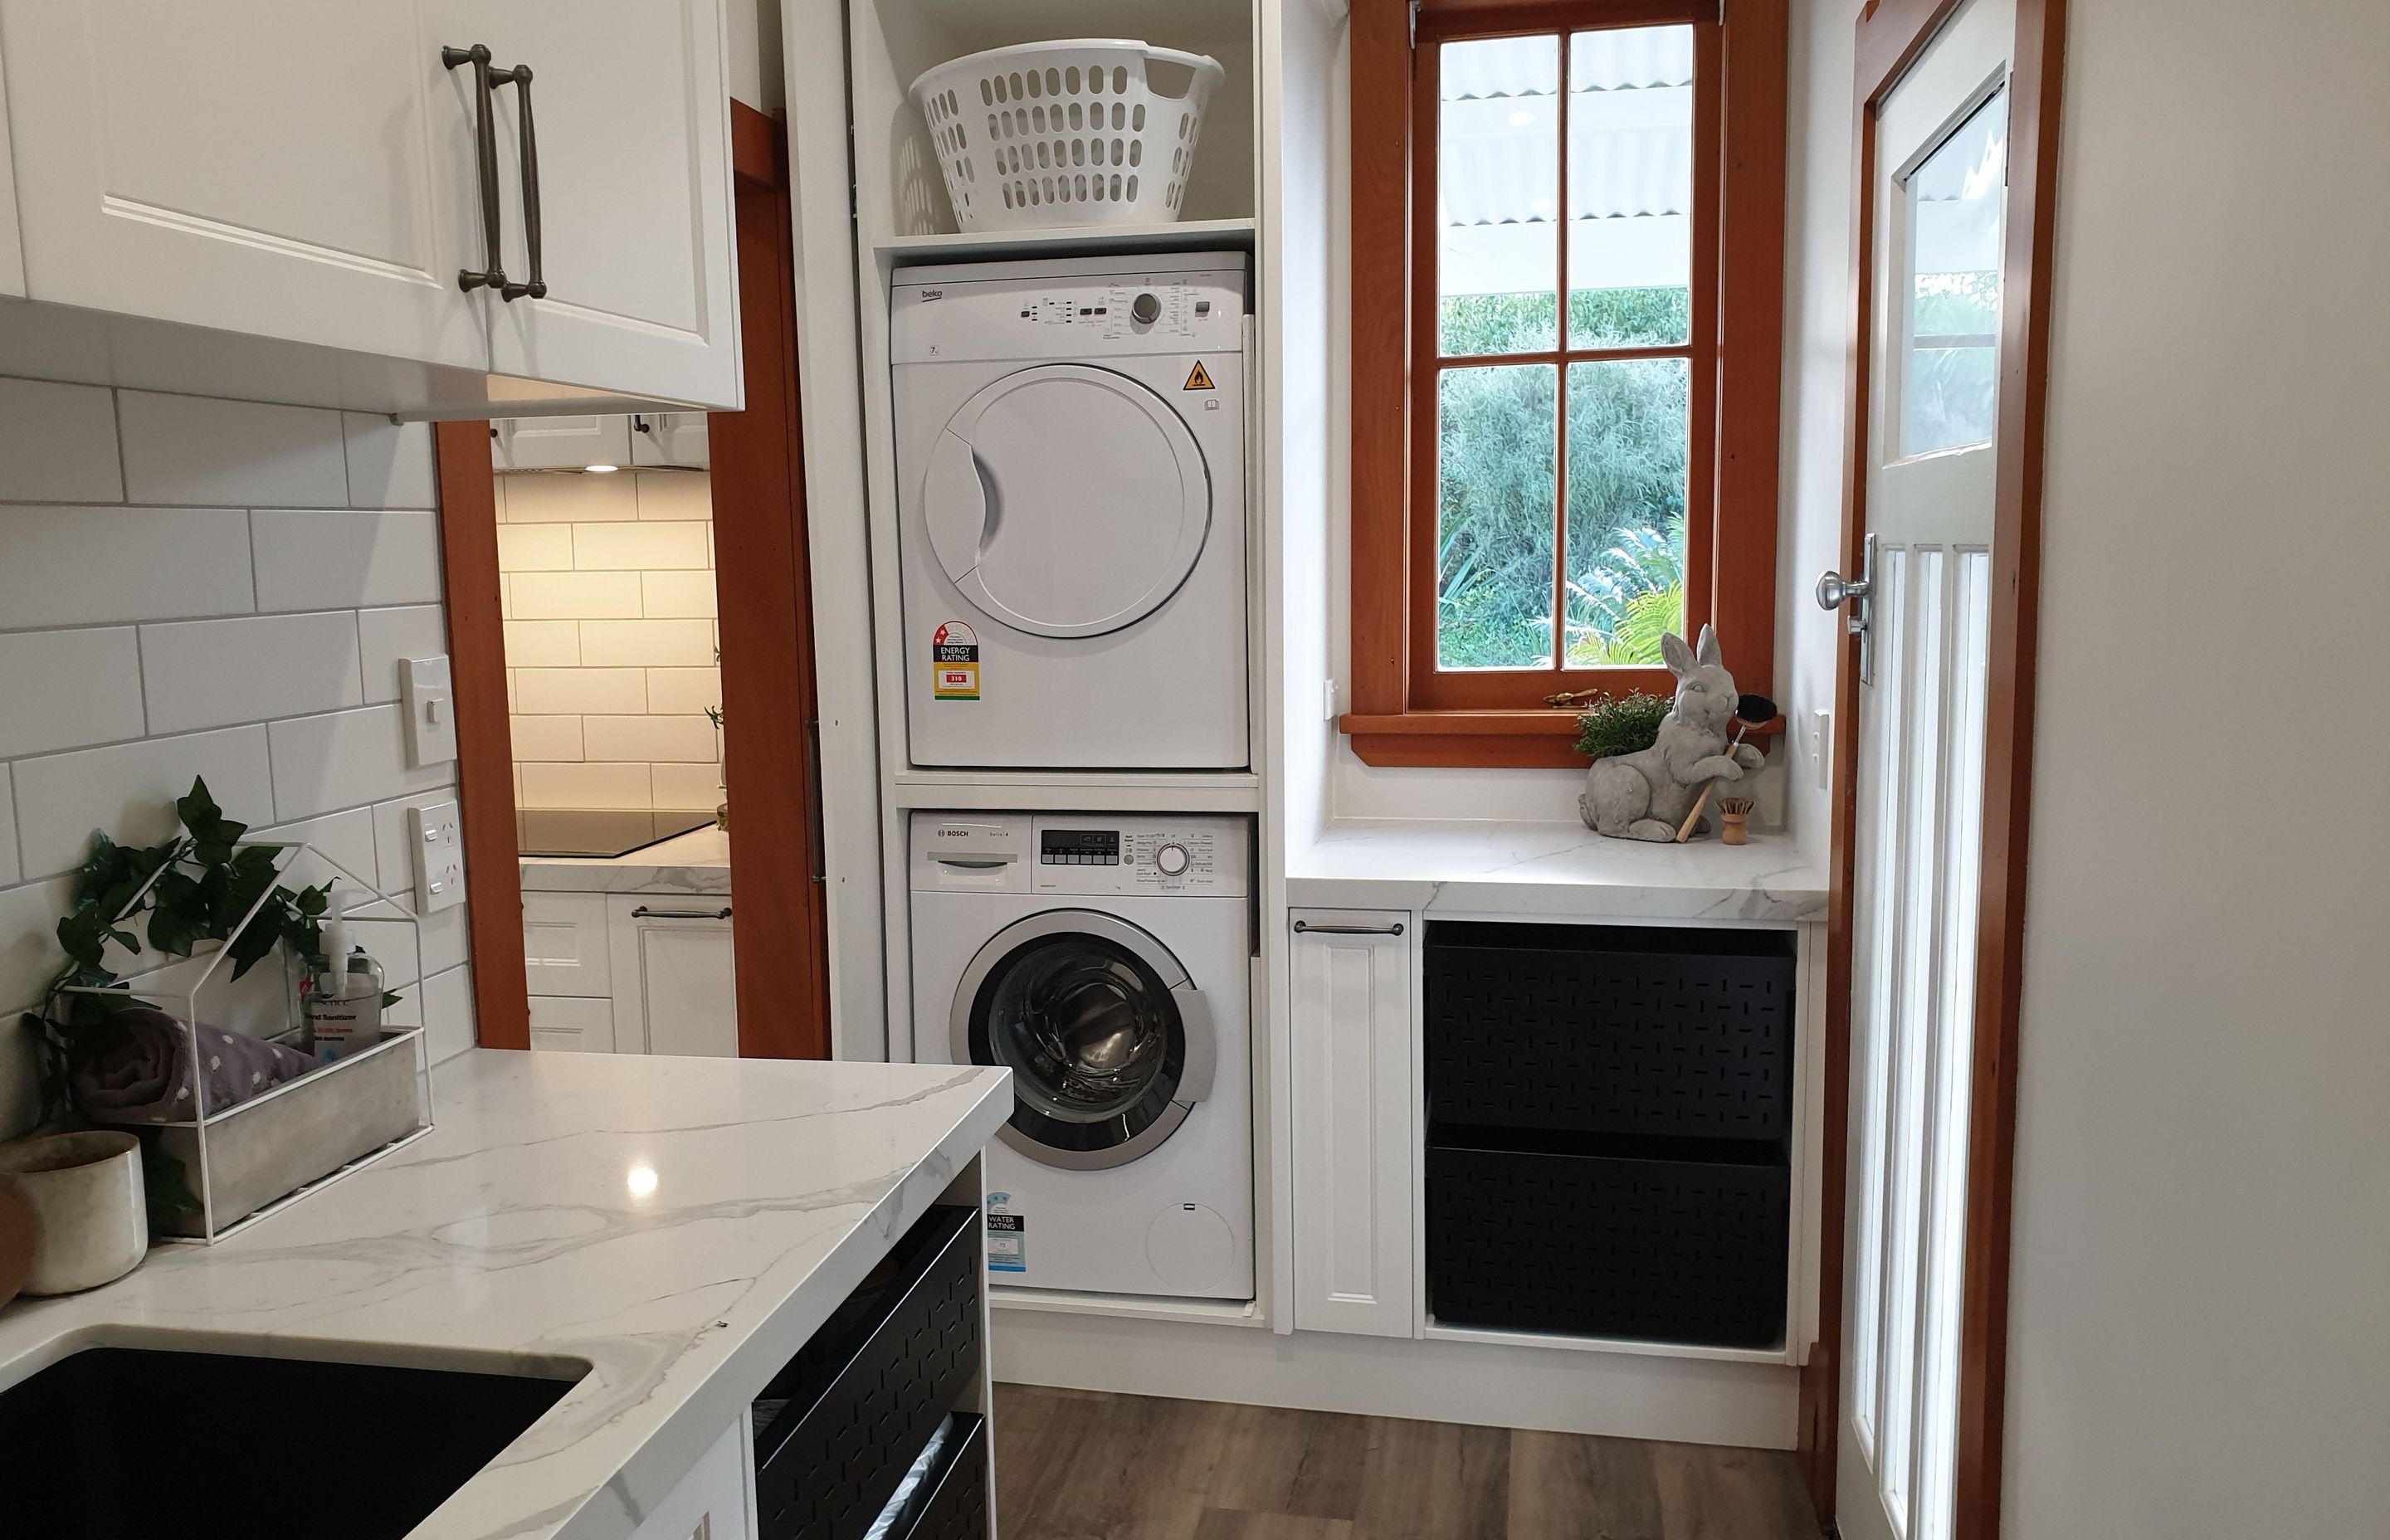 Salice Pocket Door Used to Create an Efficient Laundry Appliance Cupboard - Seen Here with Door Open